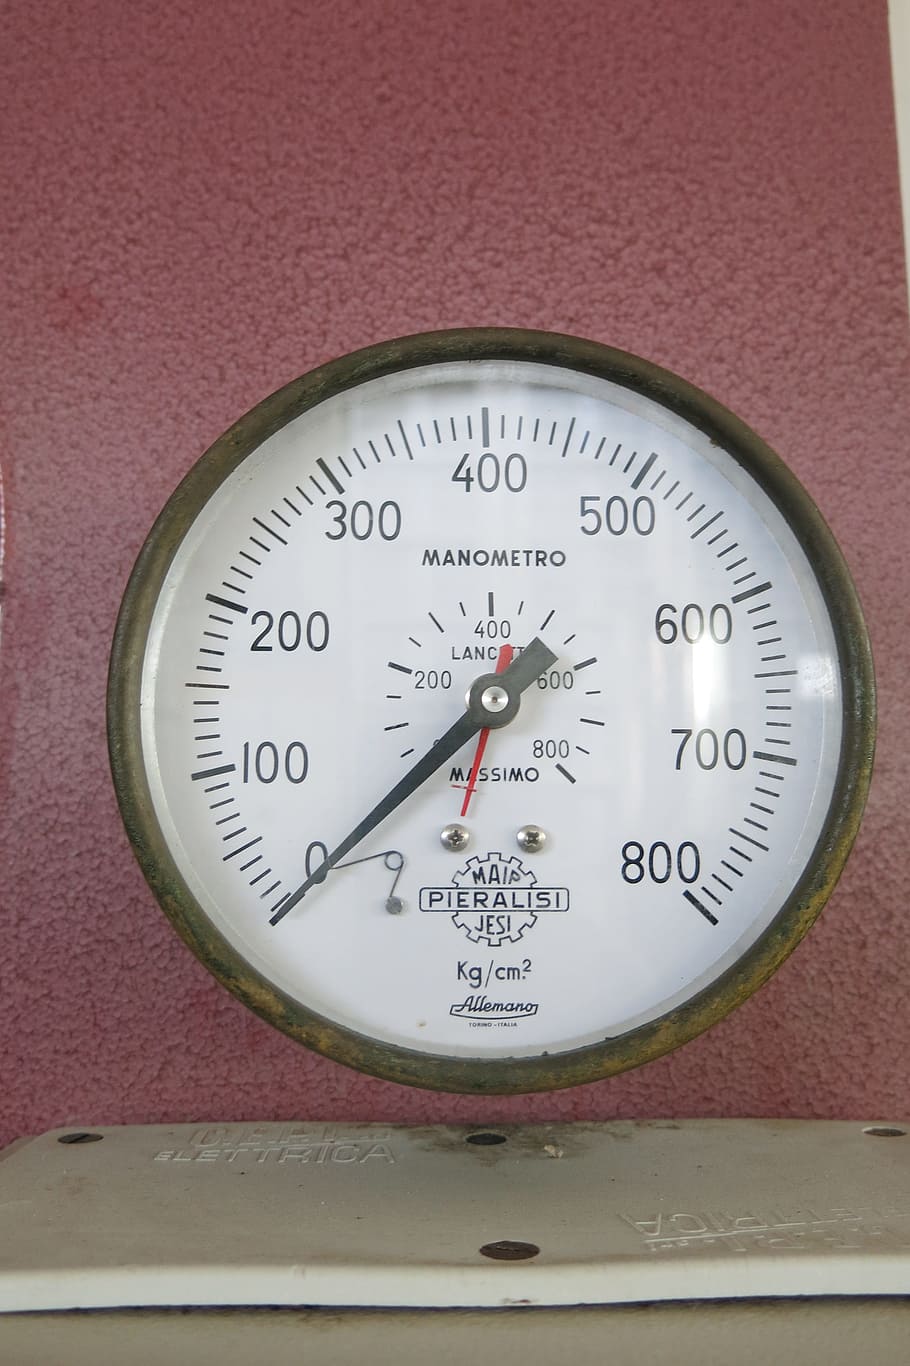 pointer, measure, pressure gauge, kg cm2, mark, olive oil press, puglia, 800, instrument of measurement, number